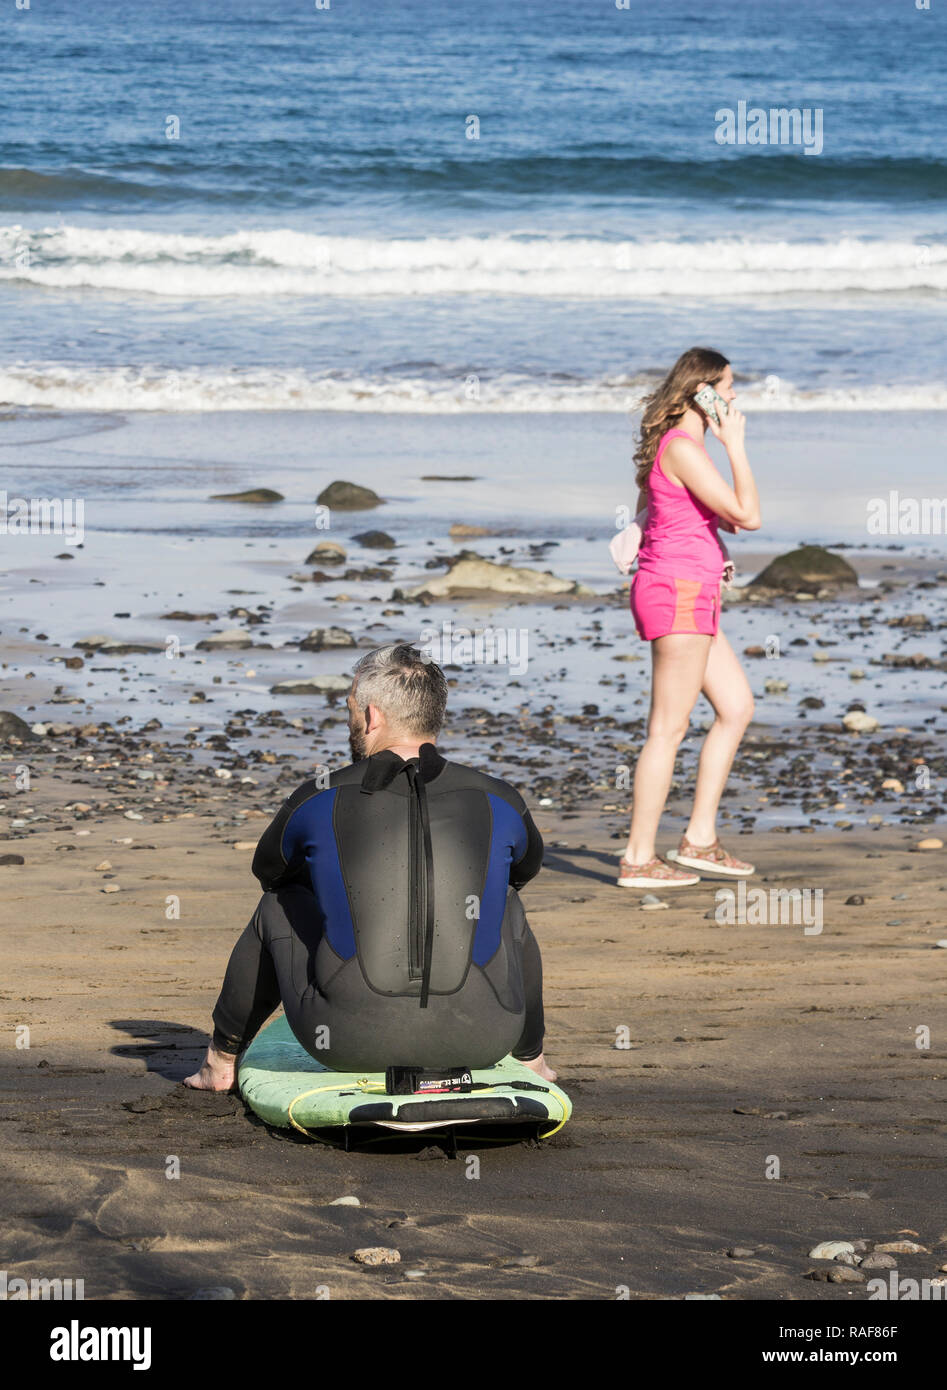 Mature surfen auf Surfboard am Strand. Stockfoto